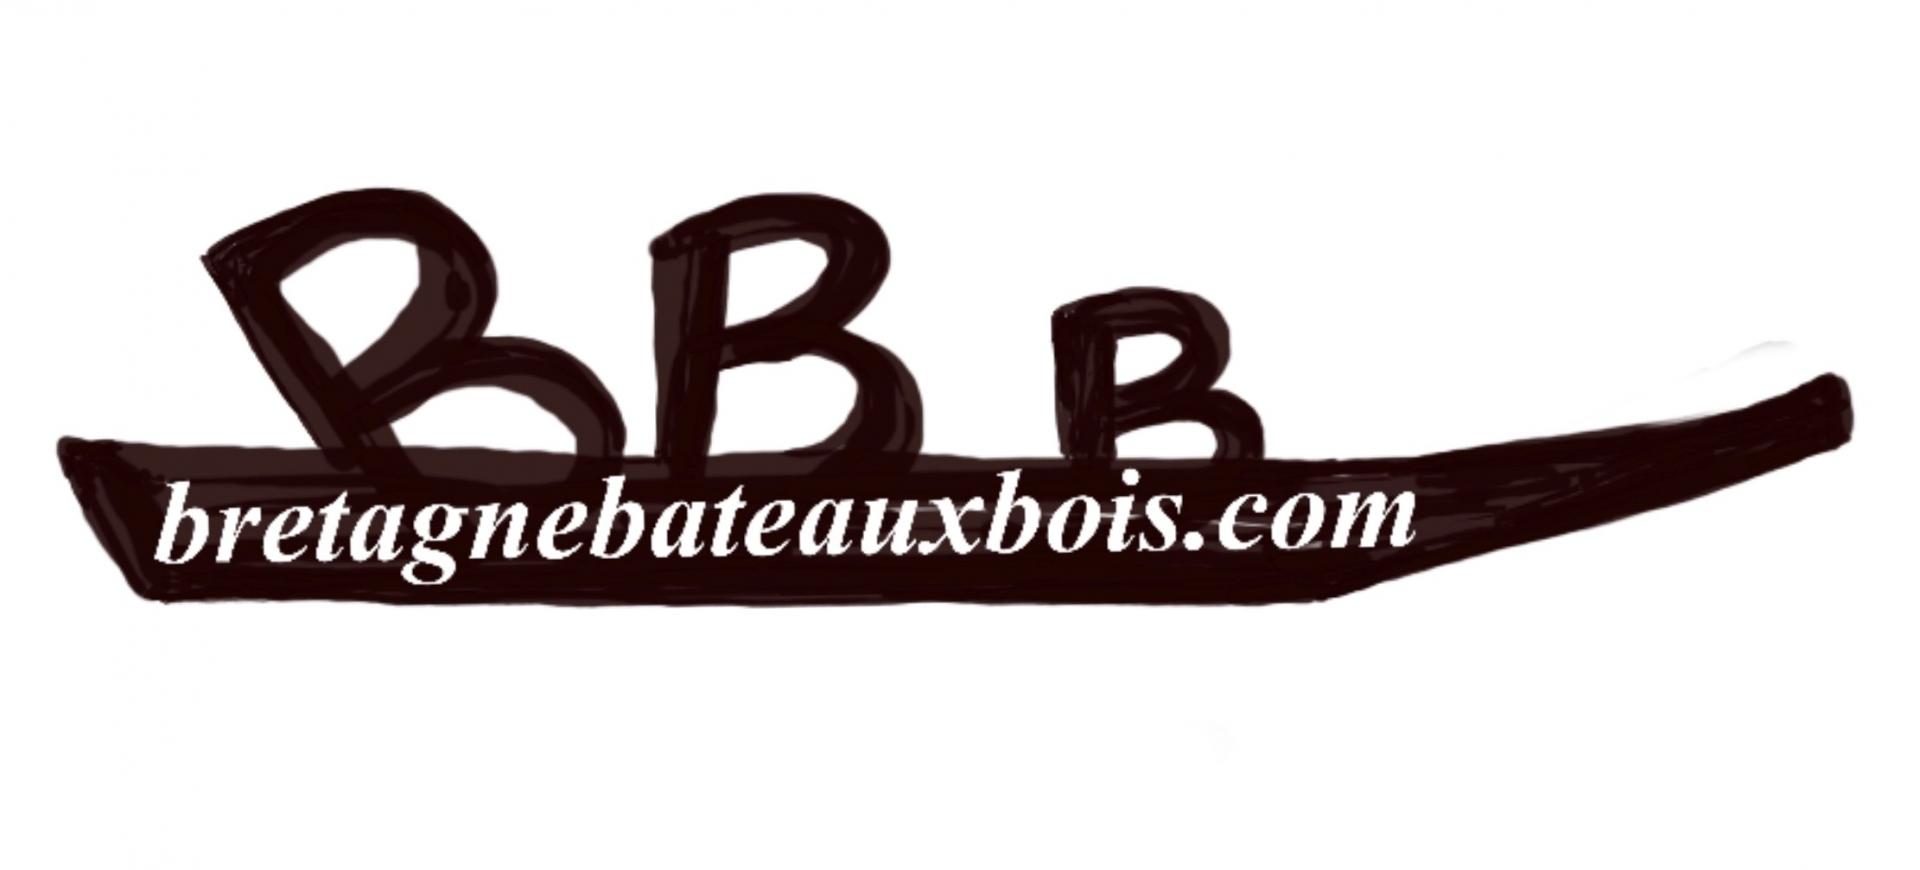 Logo bretagne bateaux bois 1